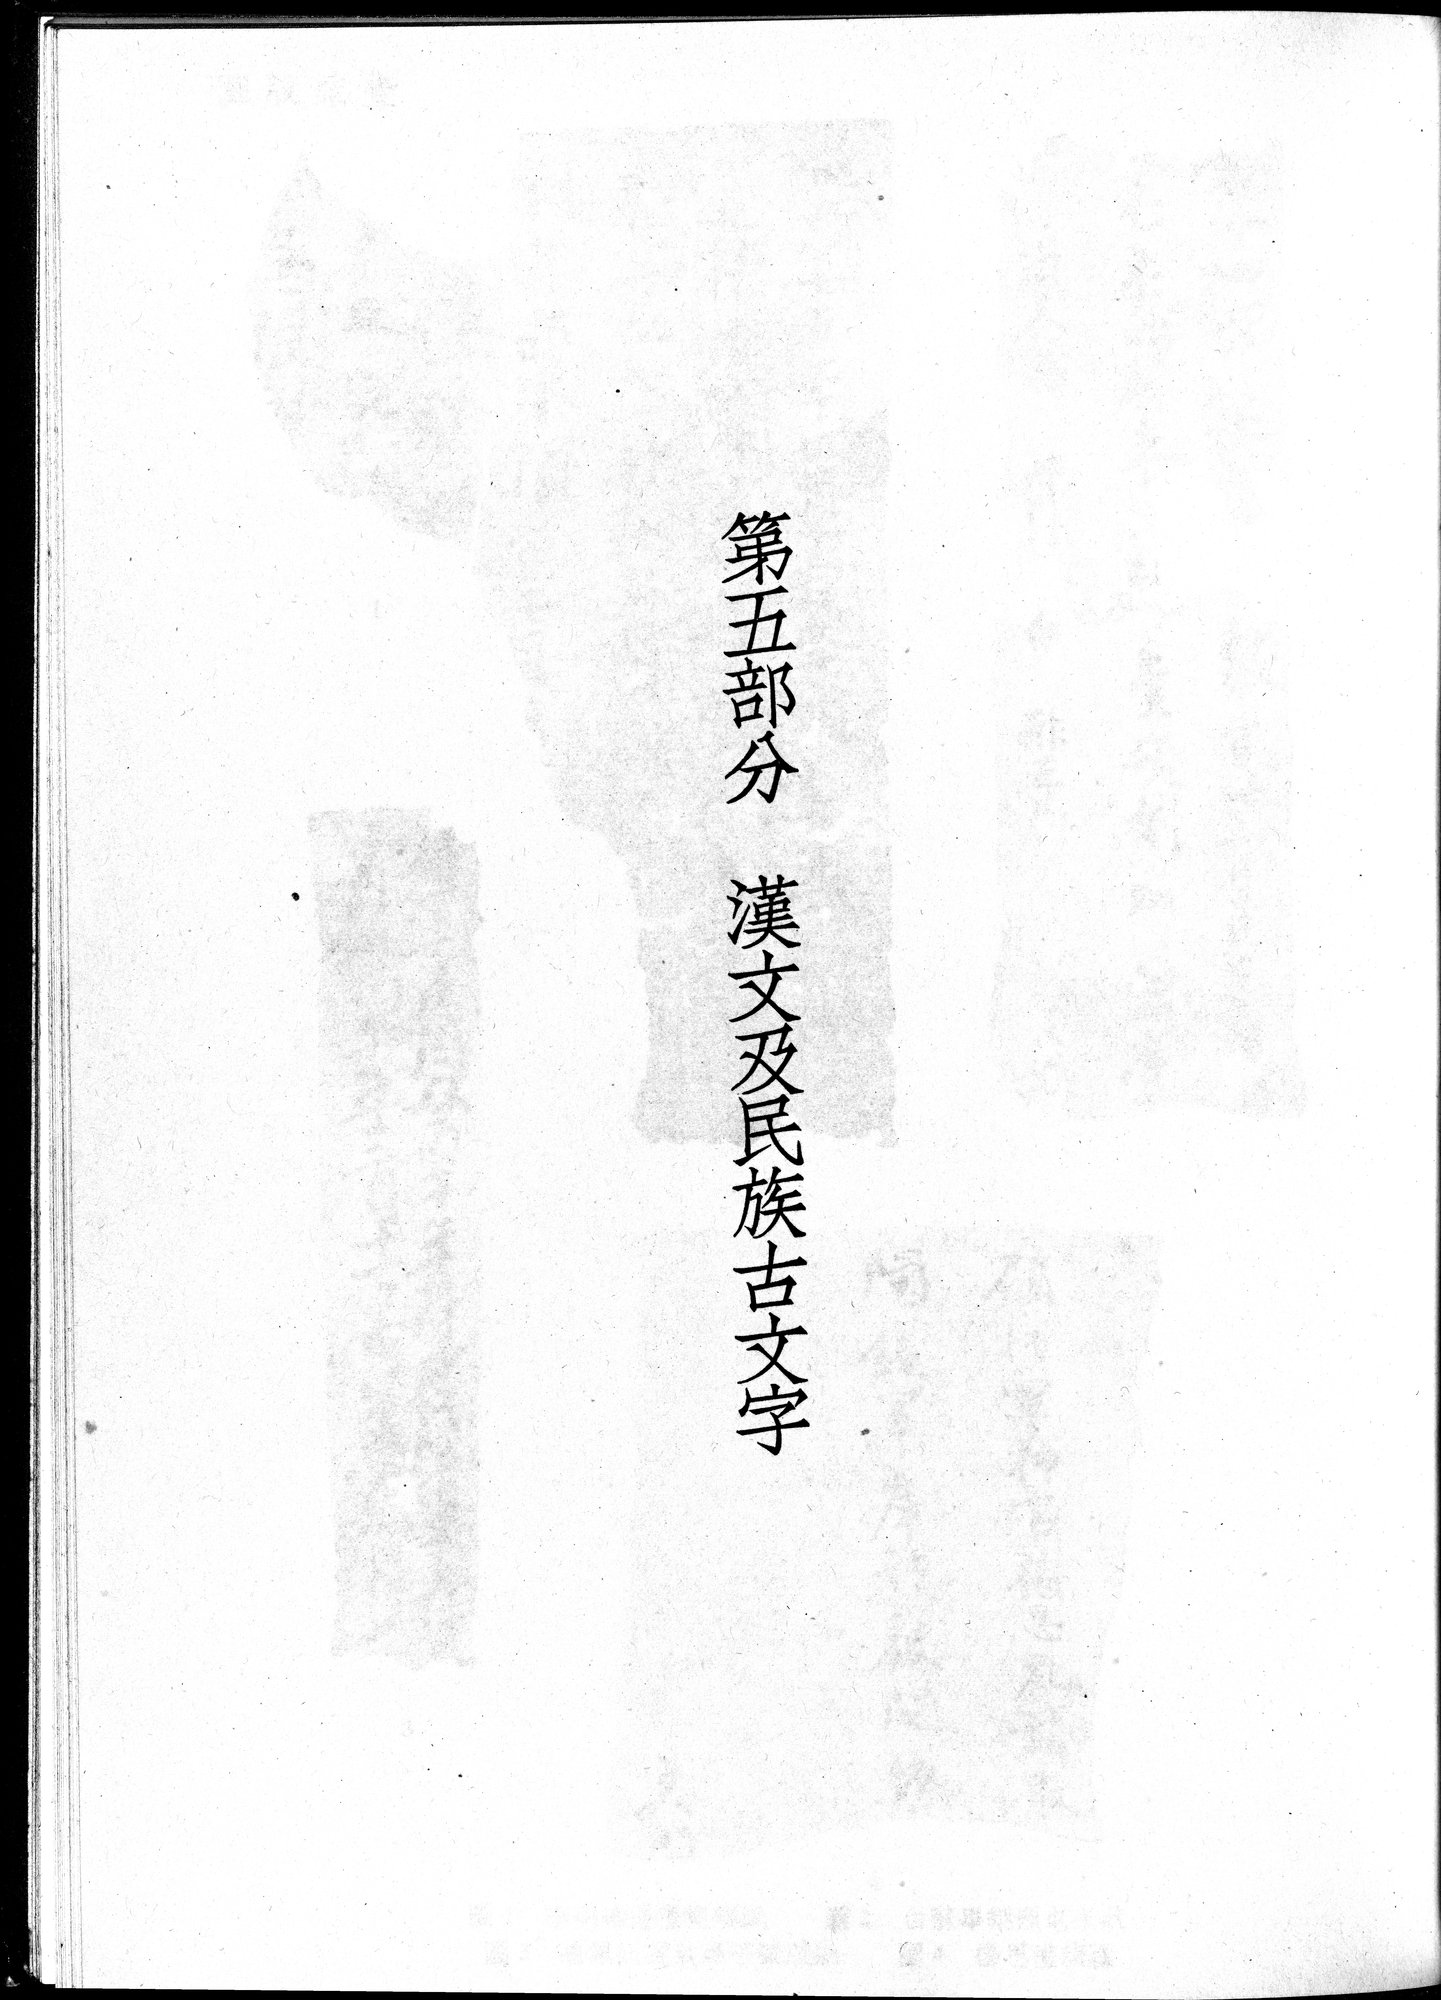 塔里木盆地考古記 : vol.1 / Page 303 (Grayscale High Resolution Image)